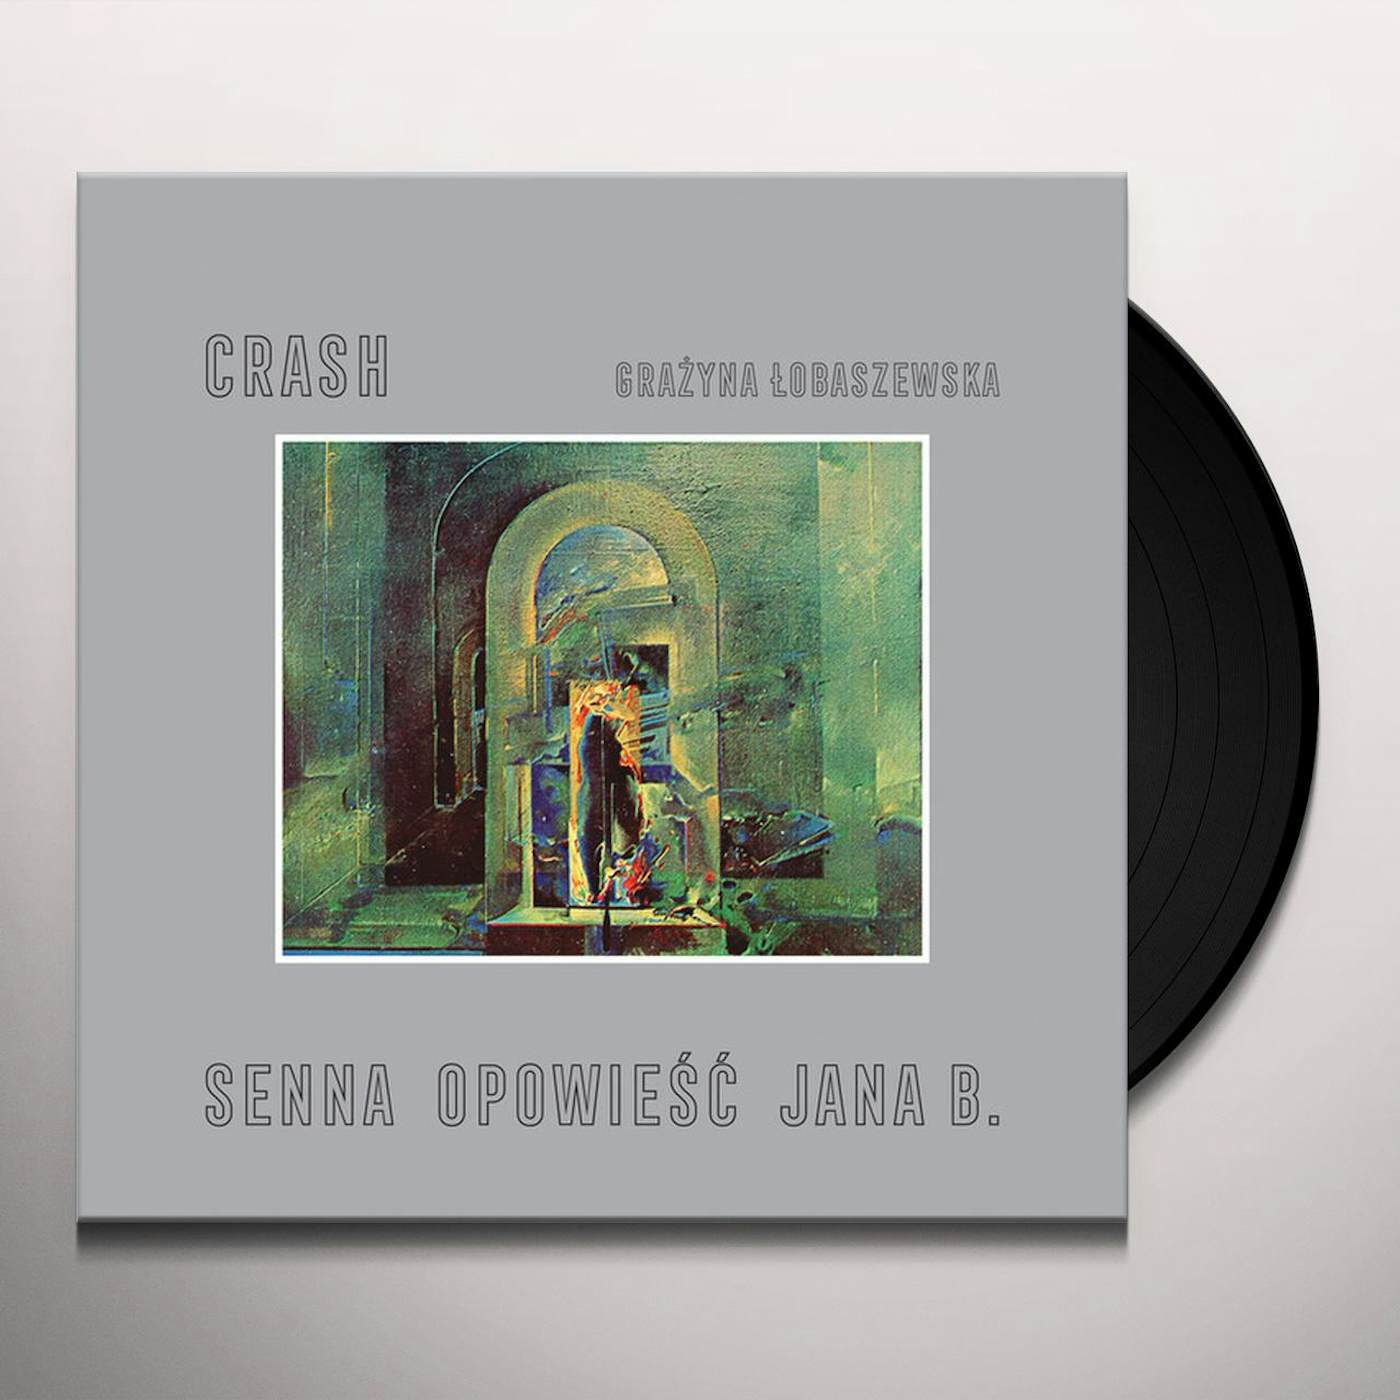 Crash SENNA OPOWIESC JANA B. Vinyl Record